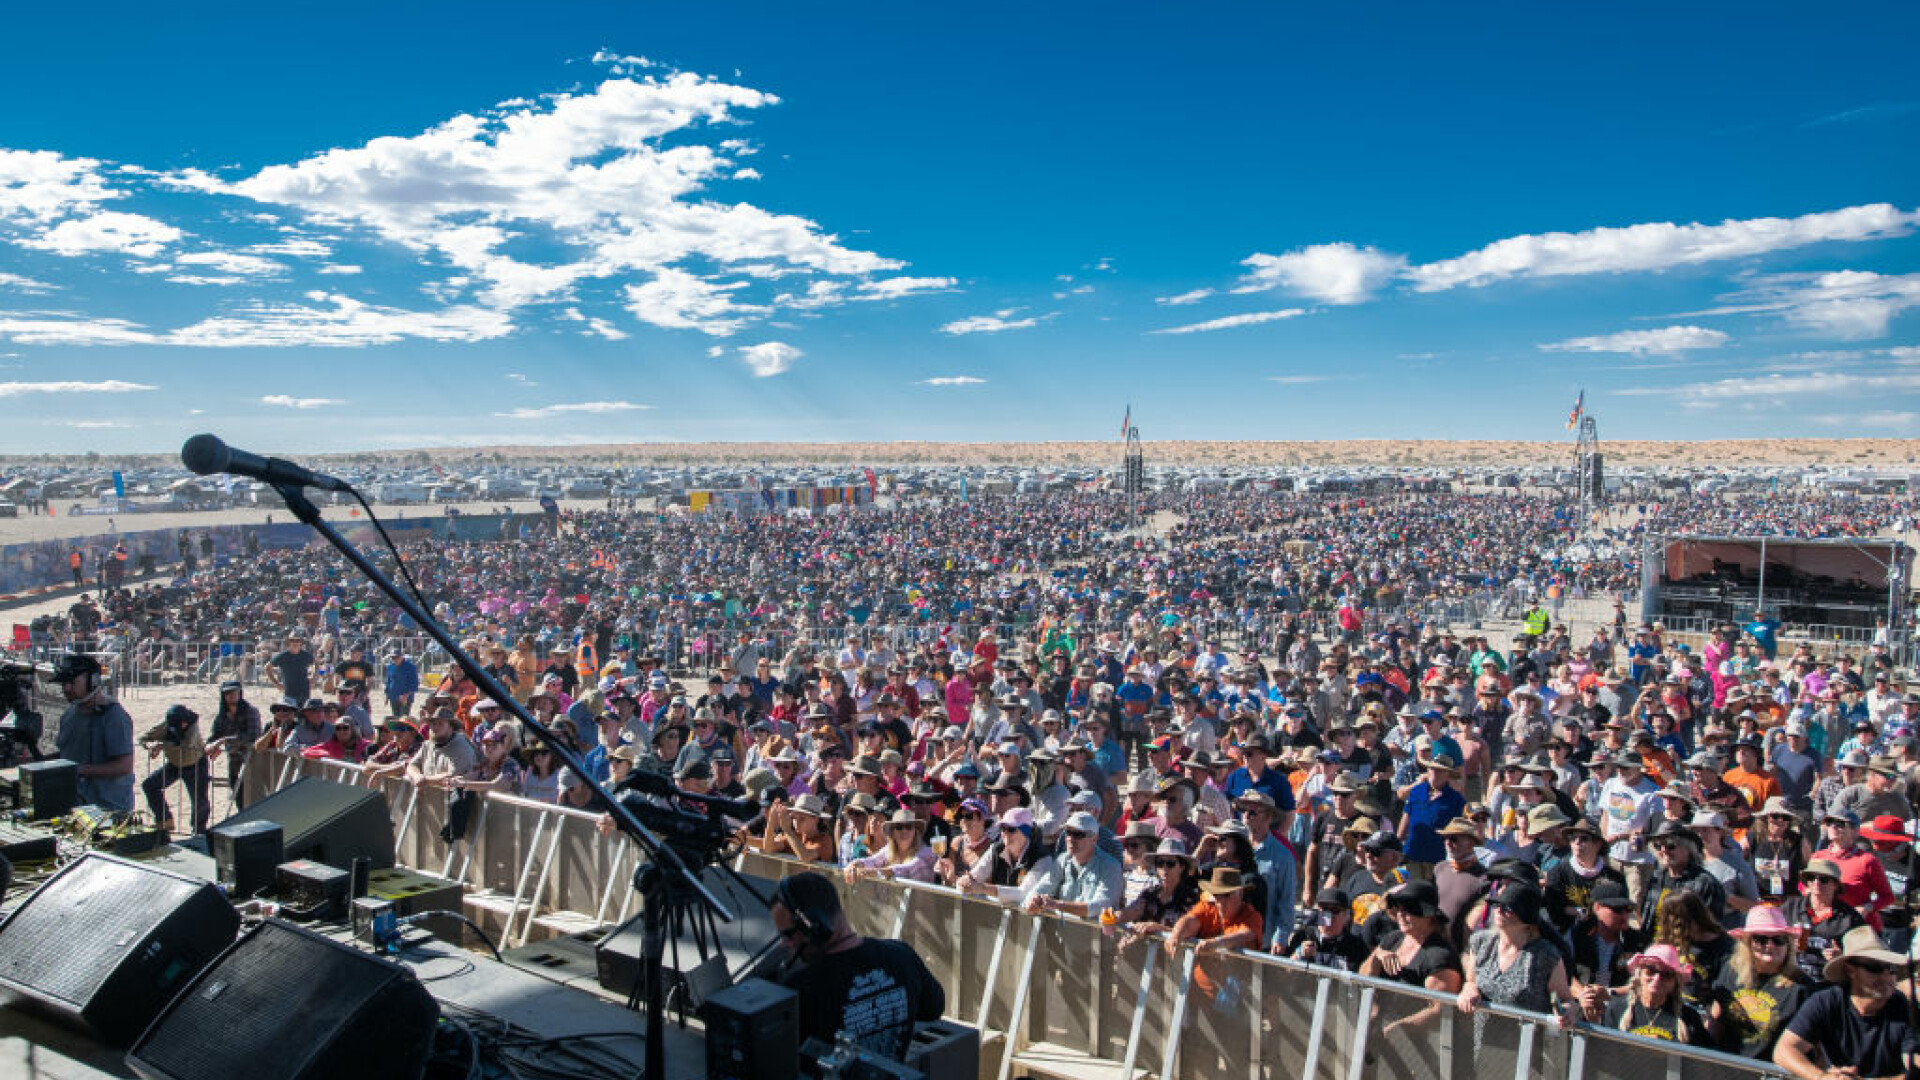 Mii de persoane participă la festivalul de muzică Big Red Bash din Australia, care se desfășoară în deșert